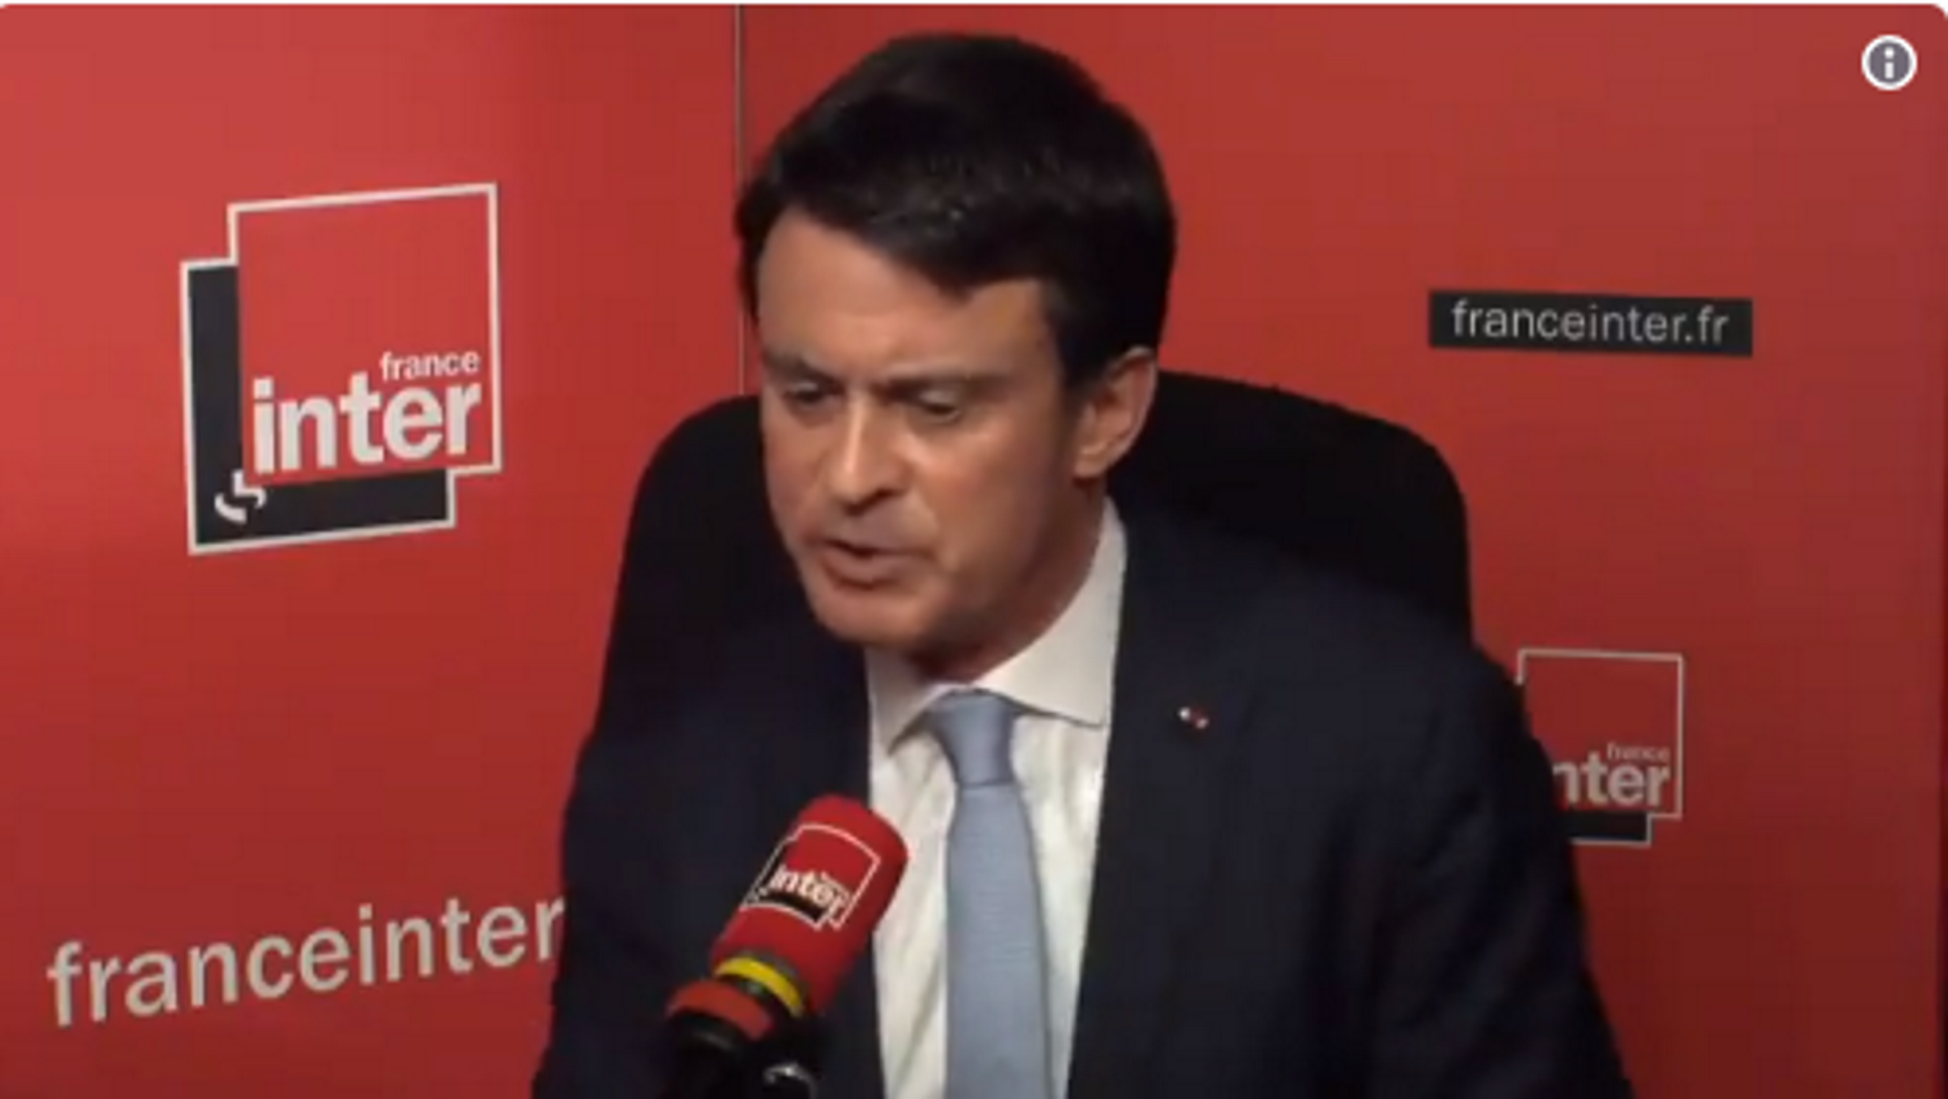 Manuel Valls da largas a la candidatura de Cs: "Por encima de todo amo a Francia"